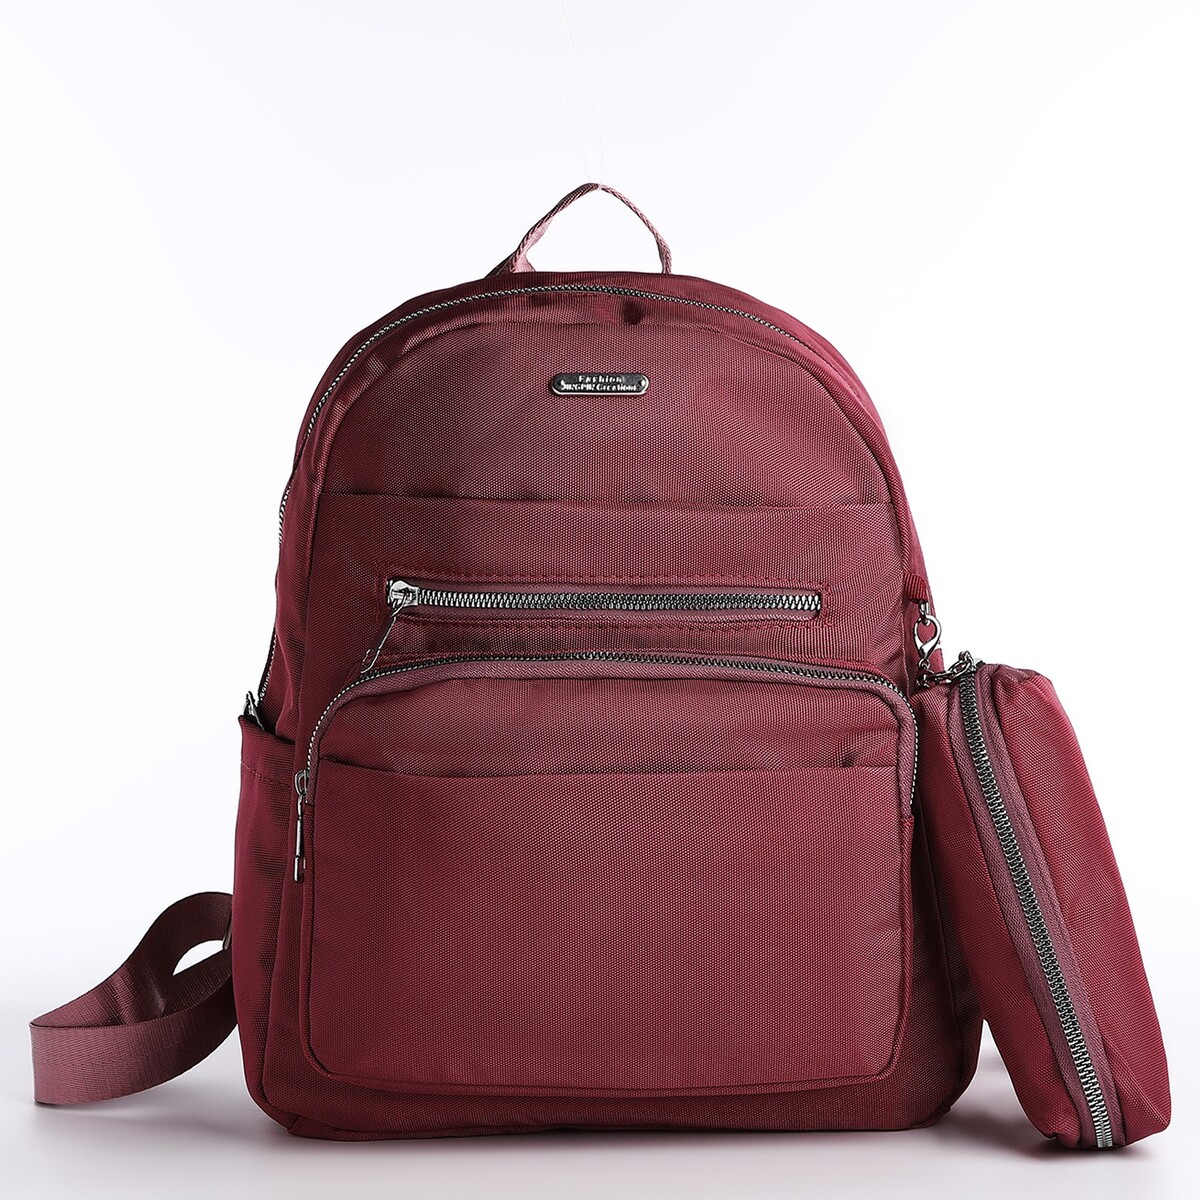 Рюкзак на молнии, 5 наружных карманов, пенал, цвет бордовый pixel bag рюкзак с led дисплеем pixel plus red line бордовый